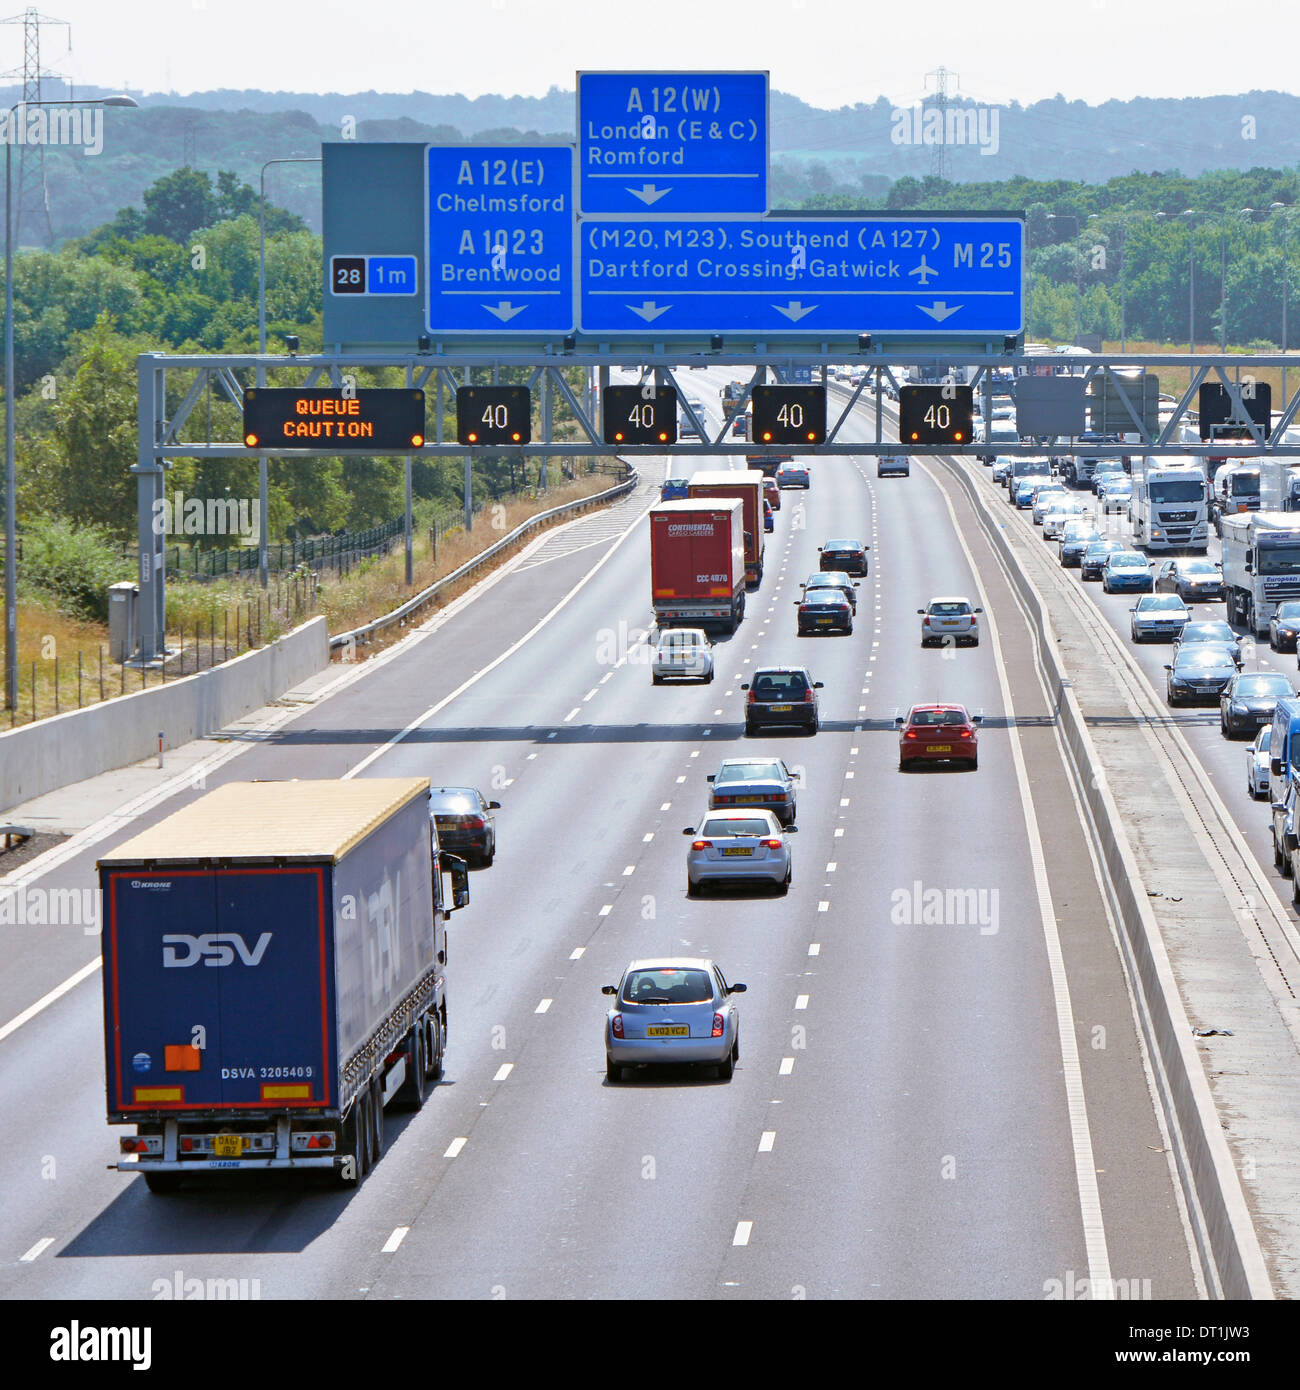 Signe du bras sur huit lane autoroute M25 sortie 28 avec affichage numérique électronique mises en garde et engorgée traffic Banque D'Images